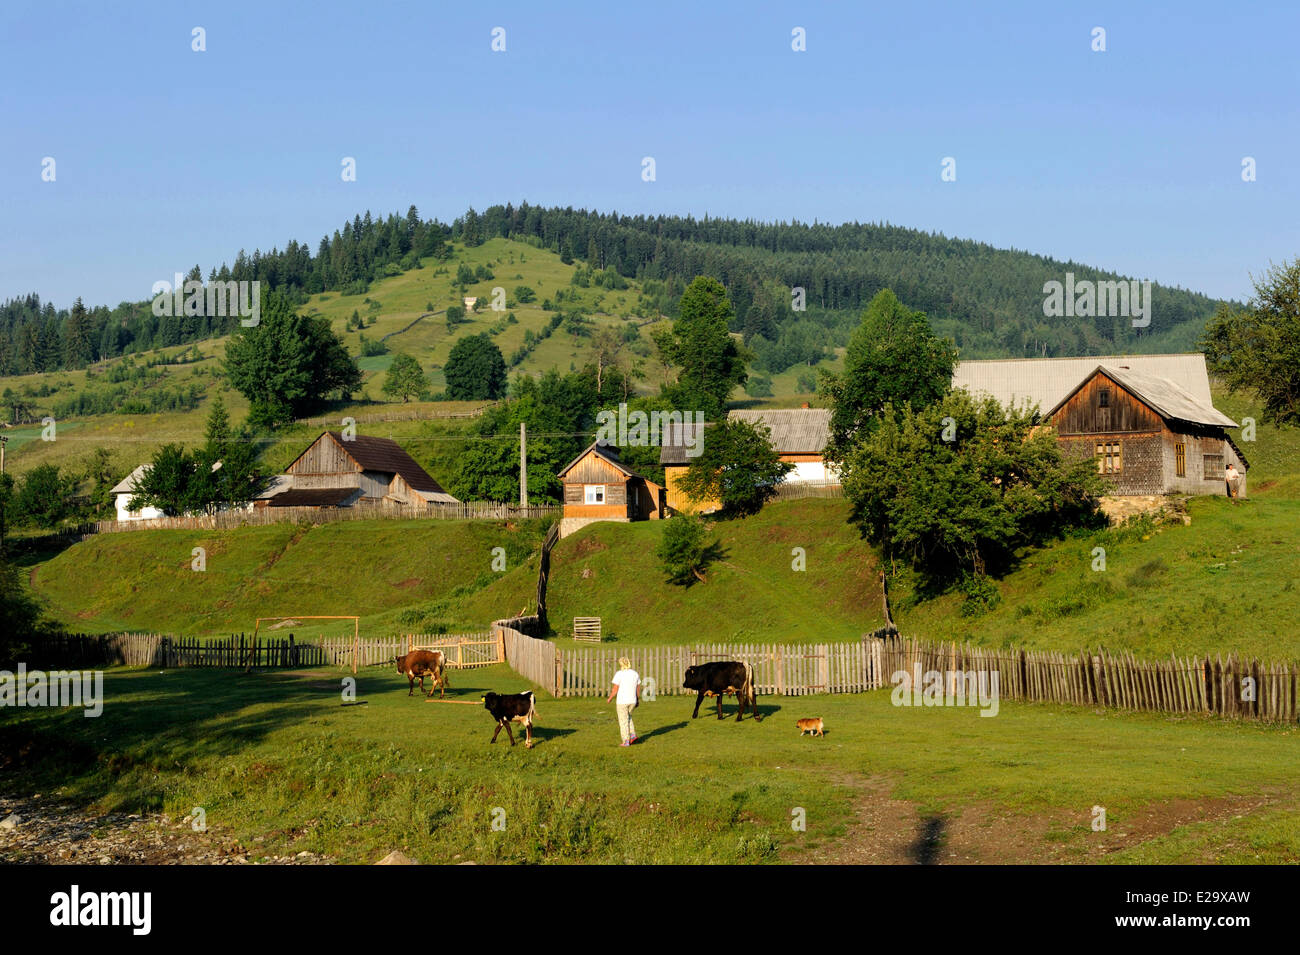 Romania, Bucovina region Stock Photo